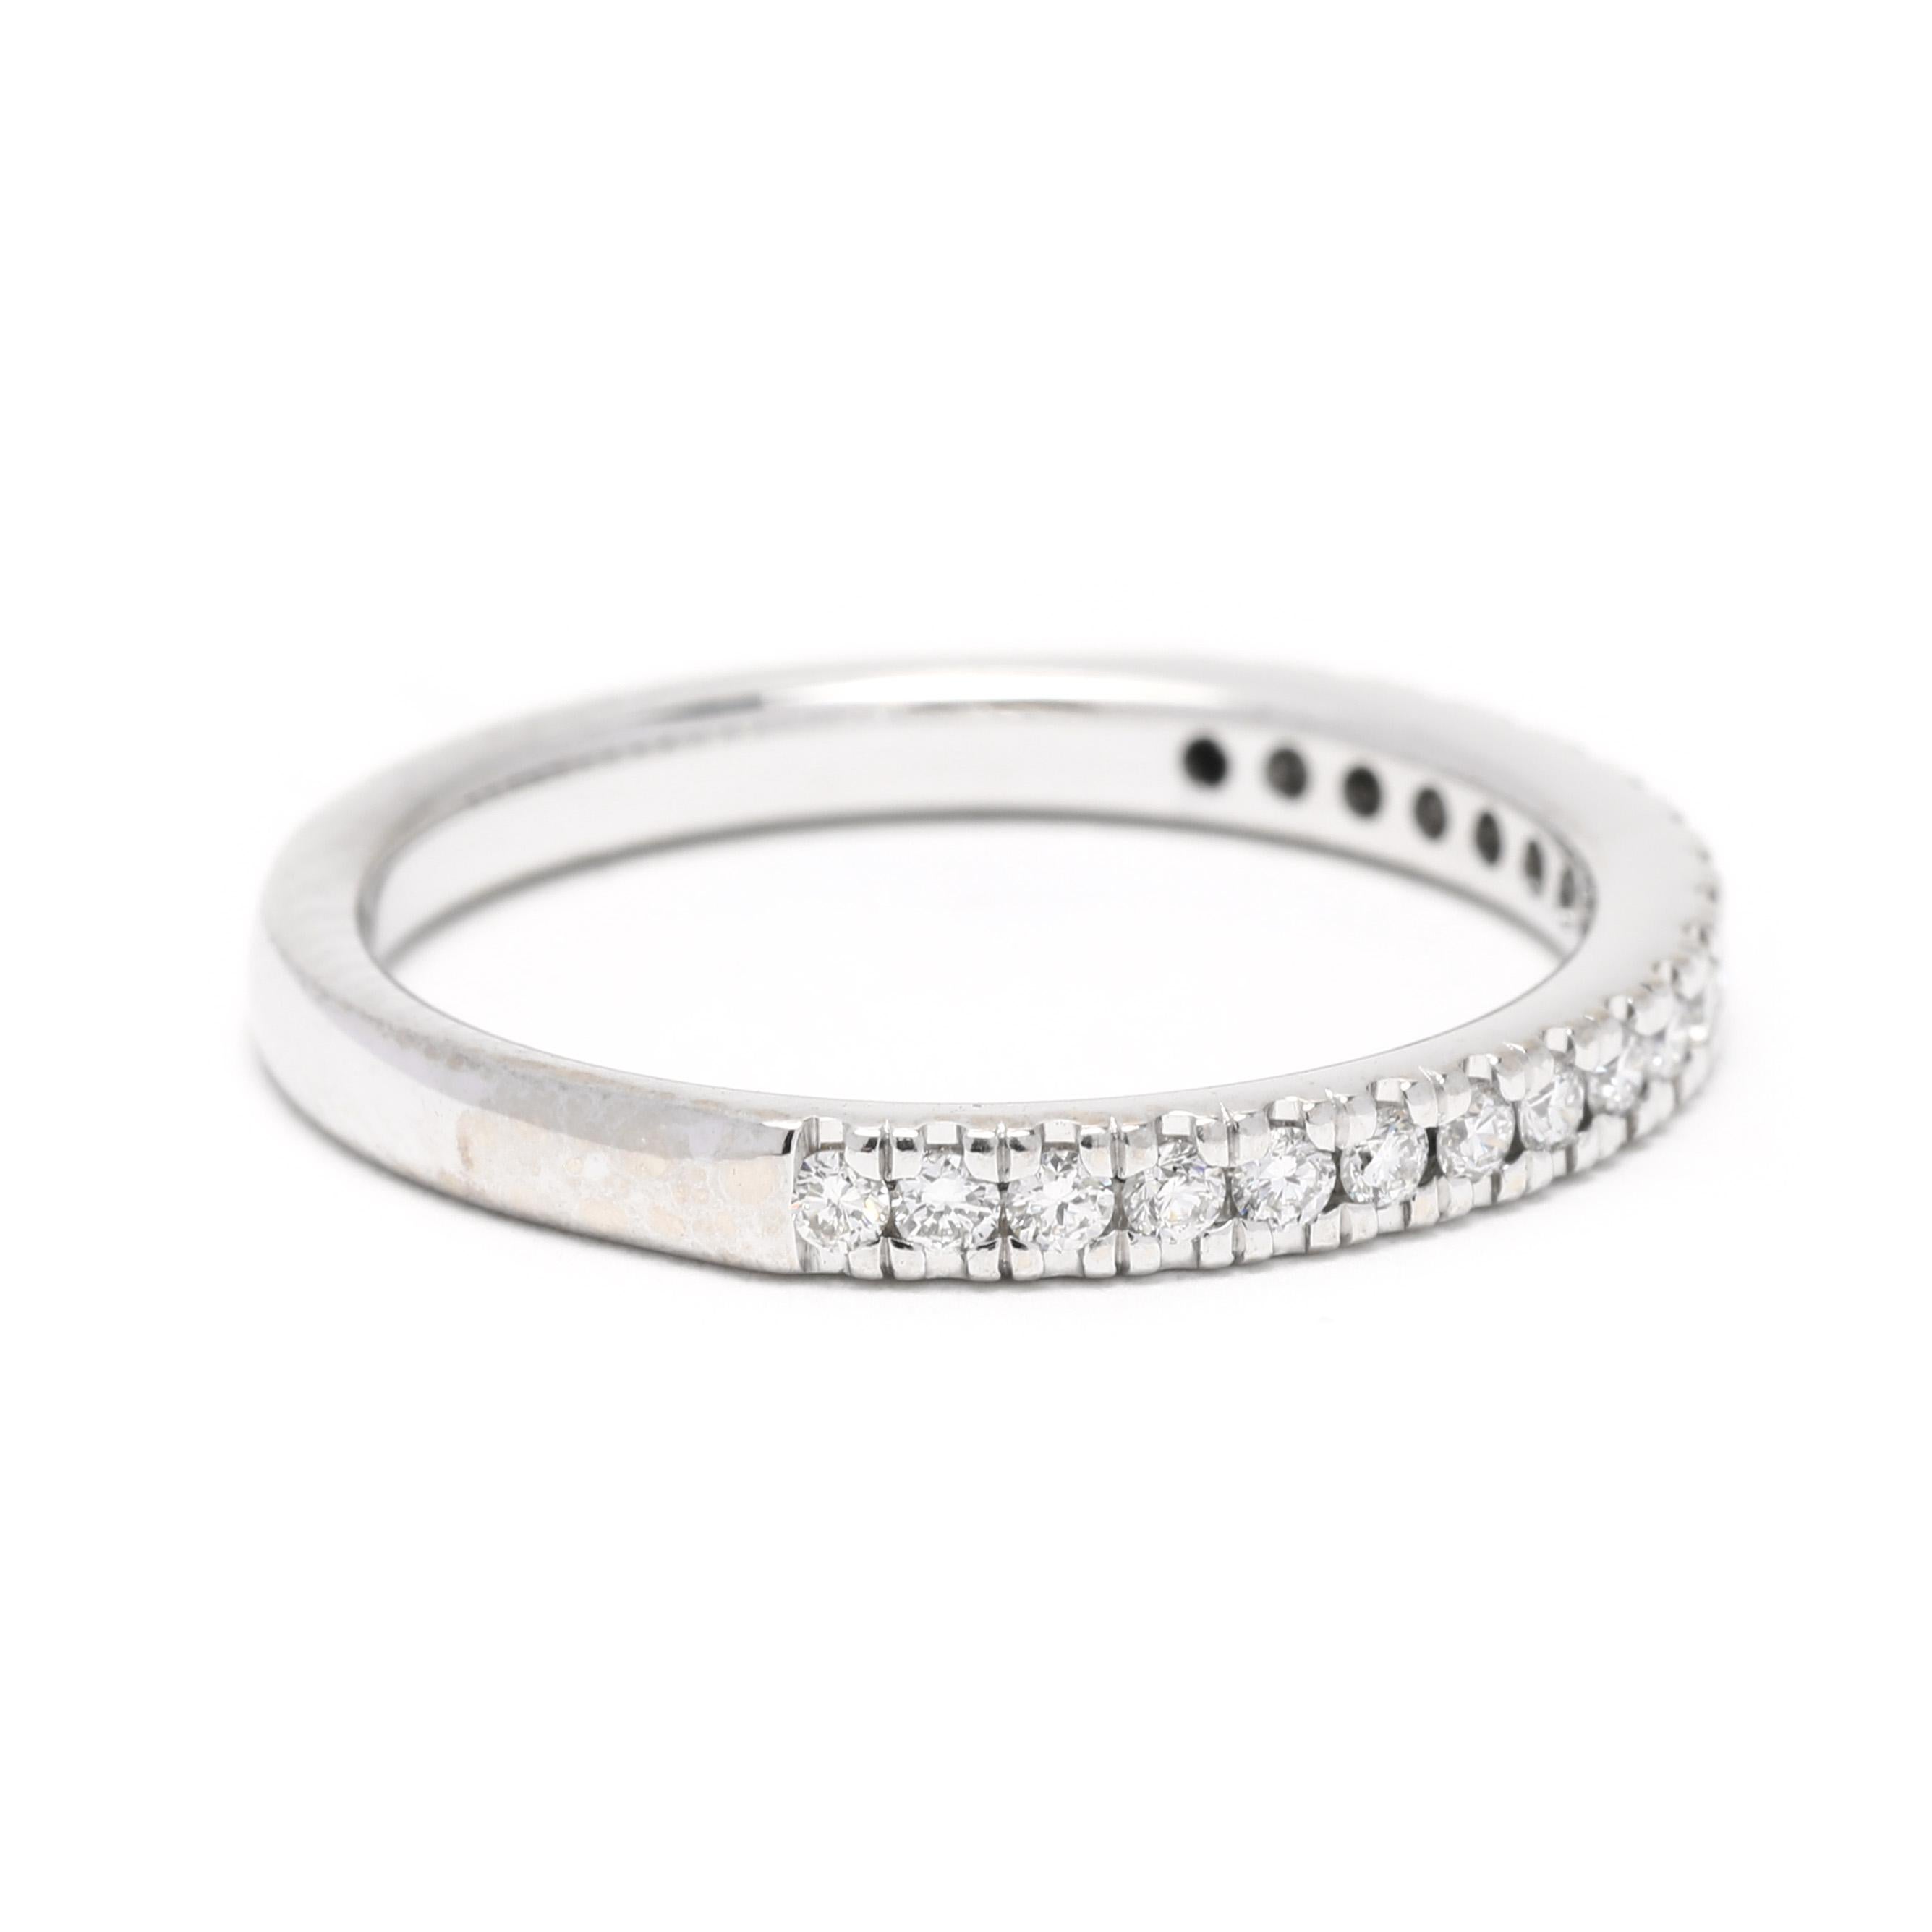 Dieser zarte 0,30ctw Diamant-Hochzeitsring ist perfekt für die moderne Braut. Dieses dünne Diamantband aus 14 Karat Weißgold ist stapelbar und mit 0,30 ctw runden Brillanten besetzt. Der ideale Ehering für die minimalistische Braut. Dieser